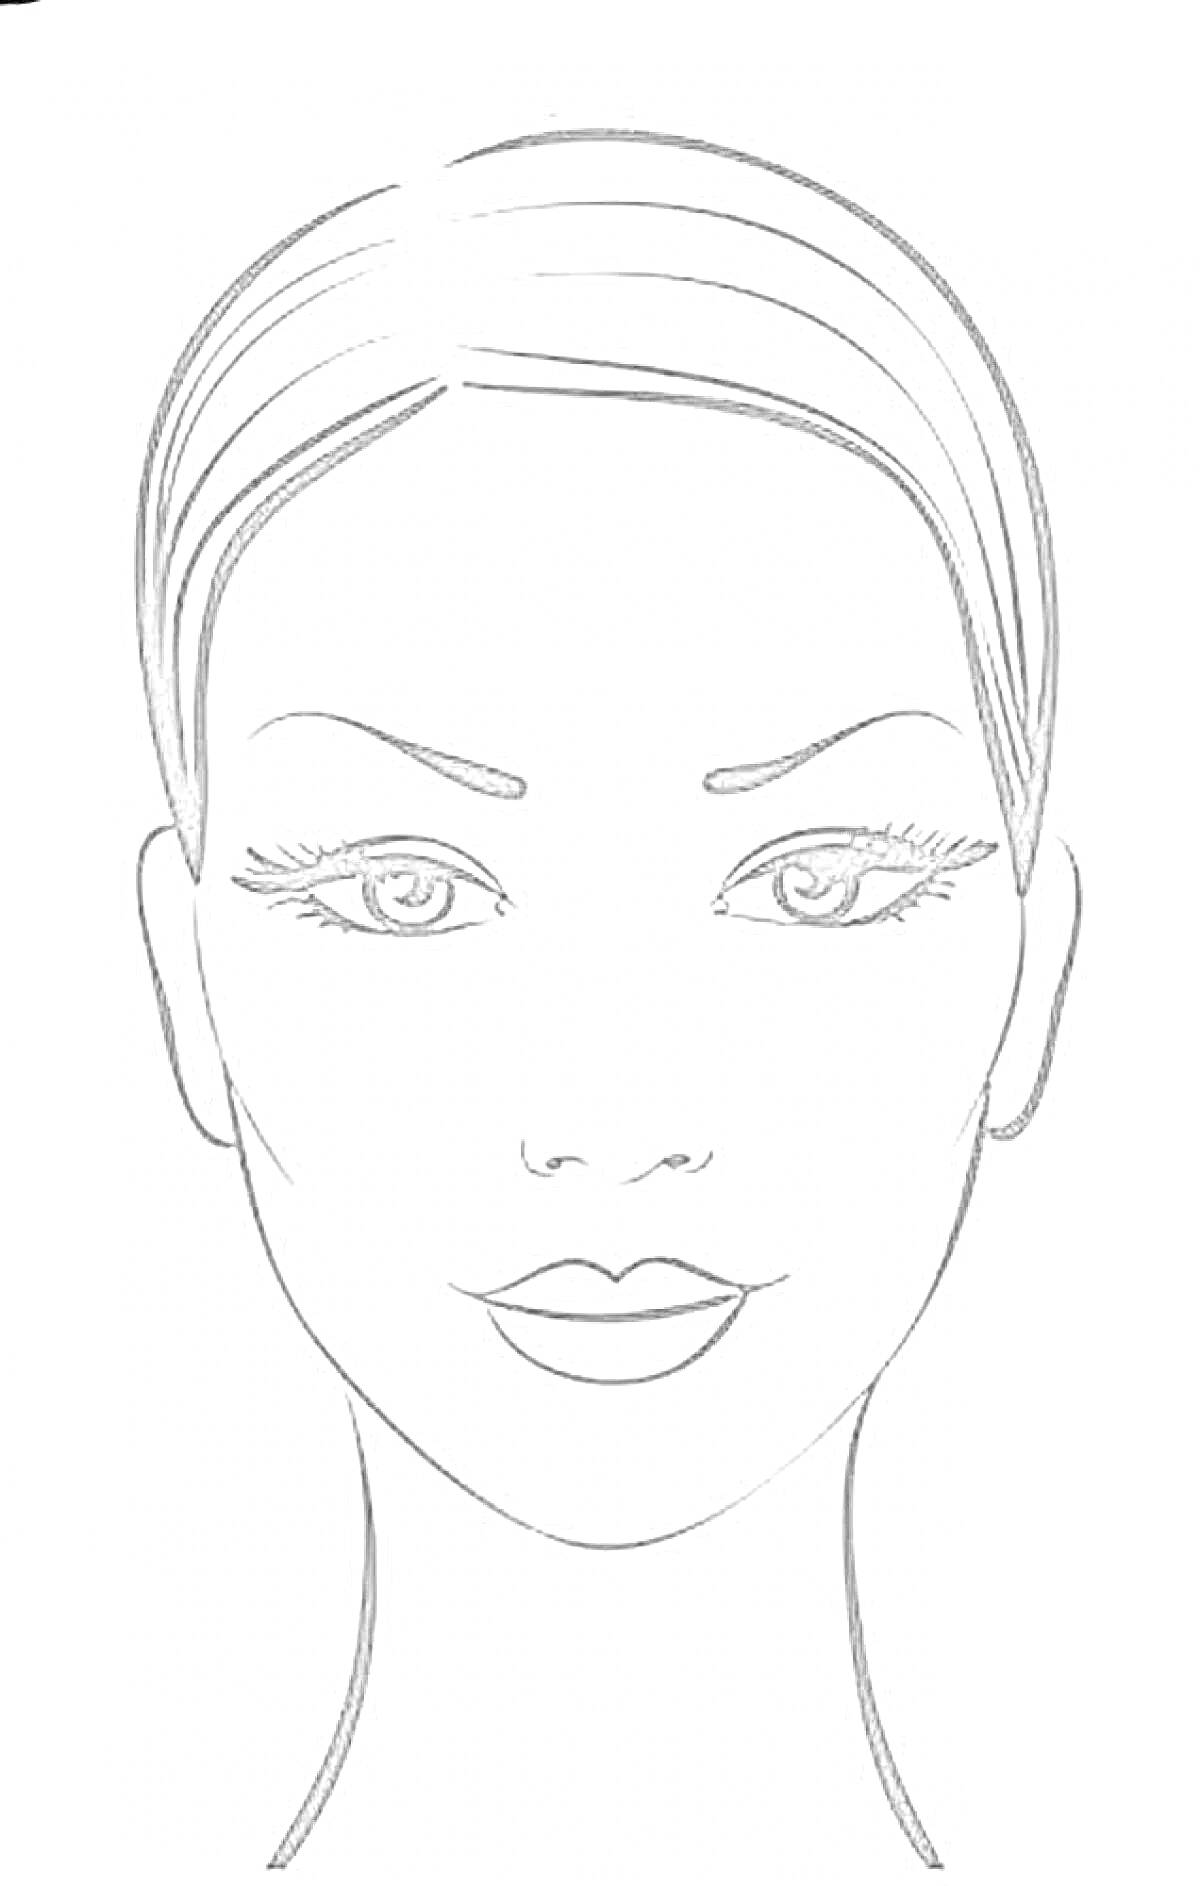 Раскраска Лицо для макияжа с чётко очерченными чертами: волосы, брови, глаза с ресницами, нос, губы.